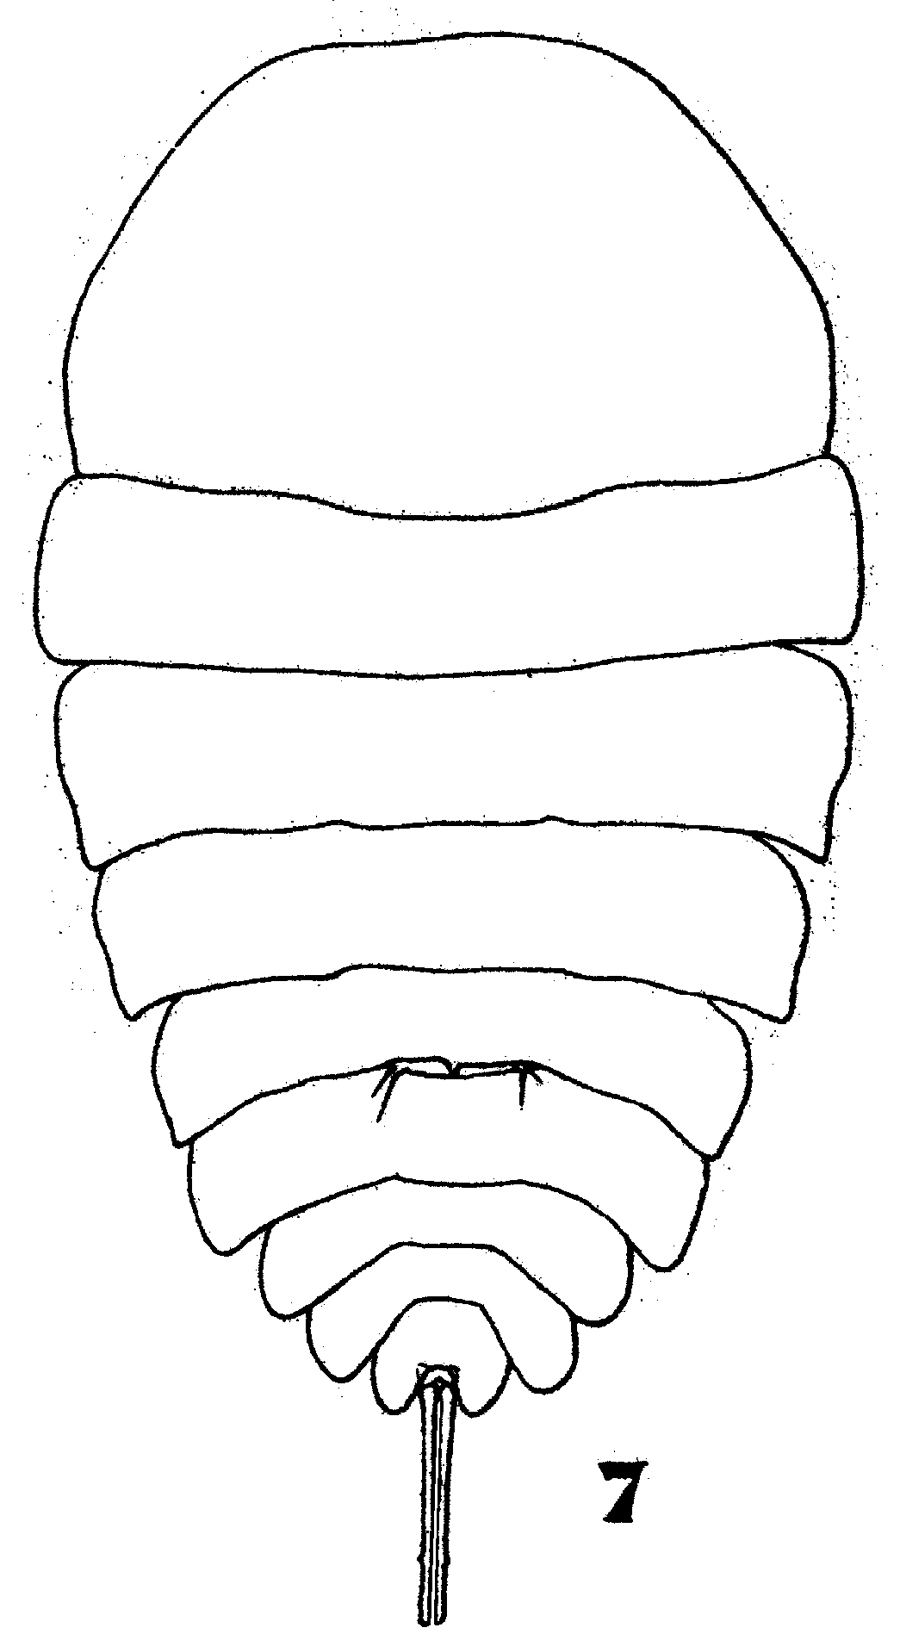 Espce Copilia mirabilis - Planche 9 de figures morphologiques